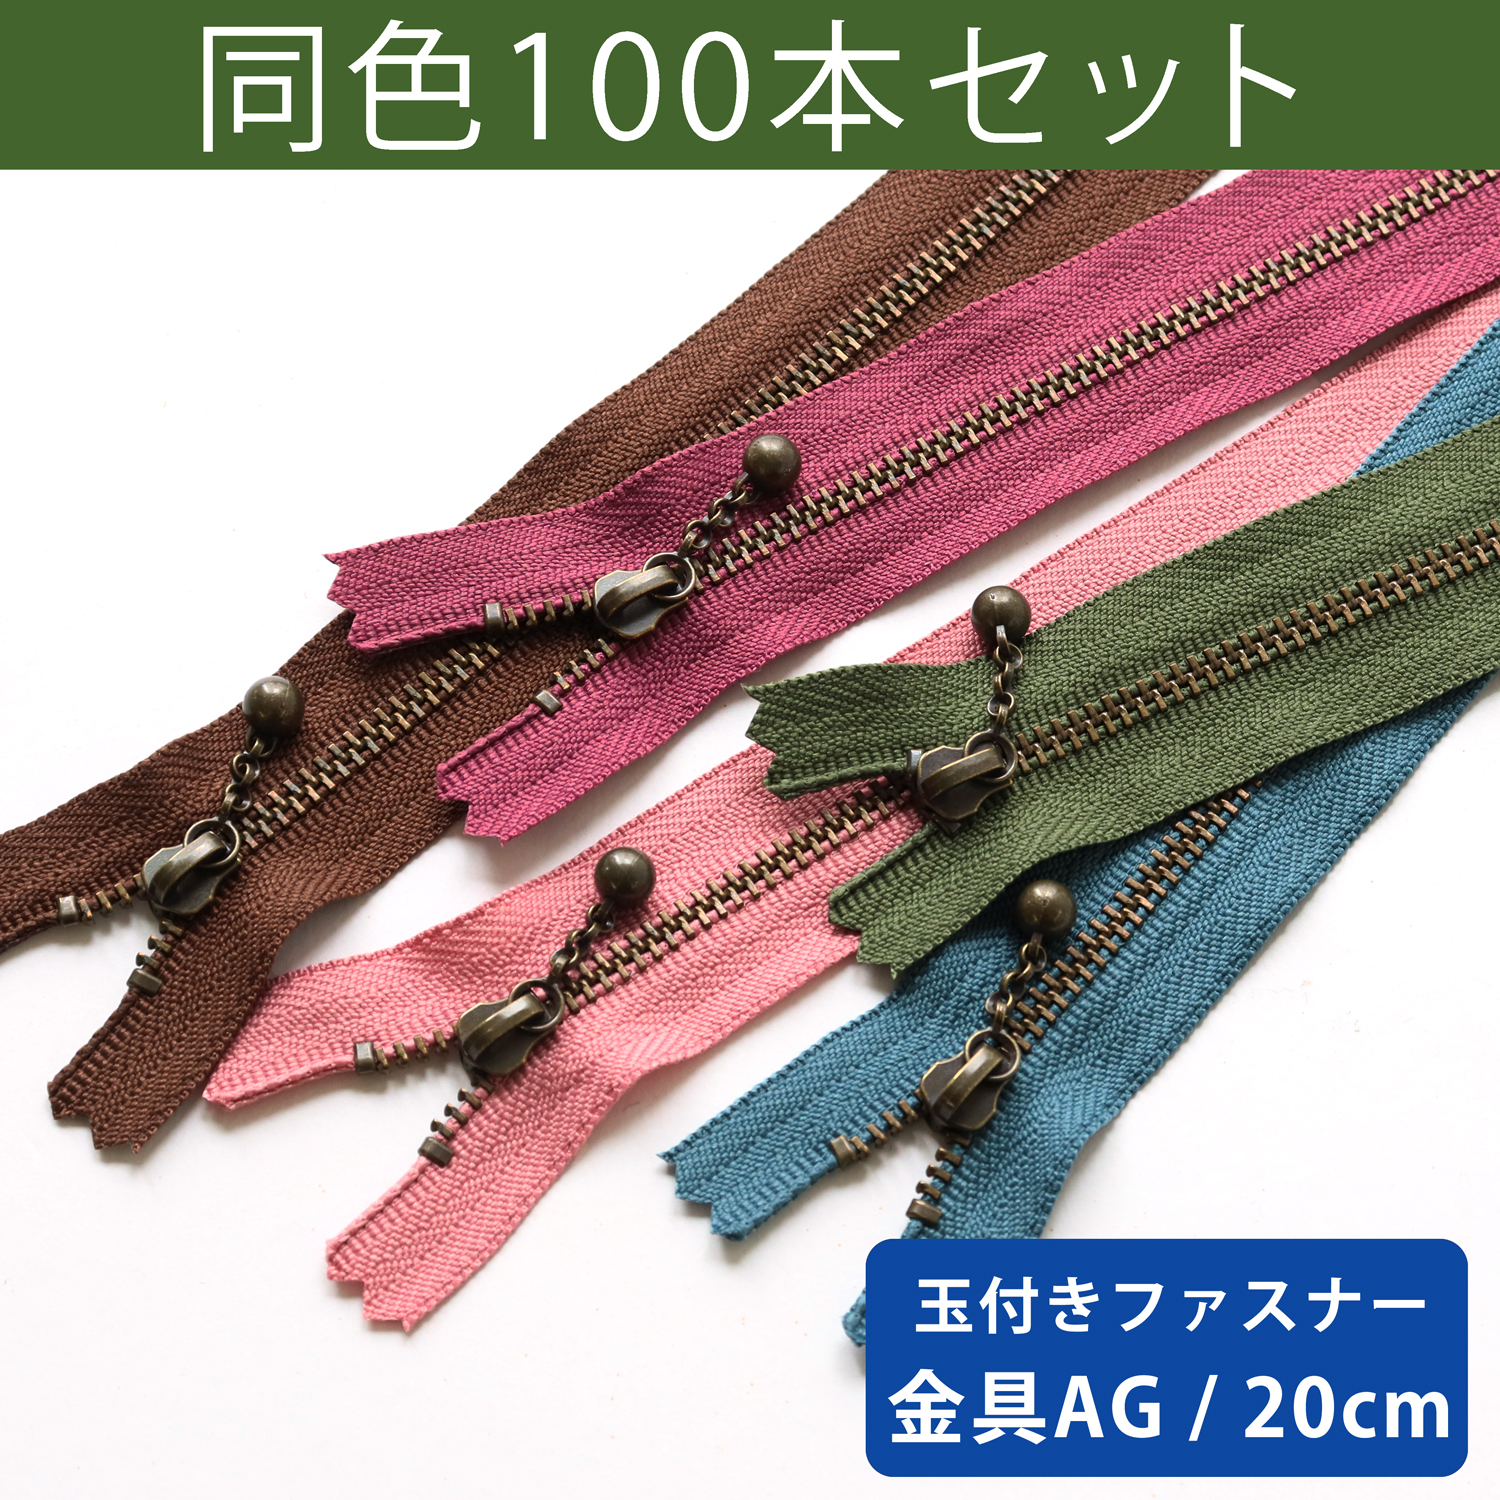 3GKB20-100SET 玉付ファスナー 20cm 100本入 (セット)